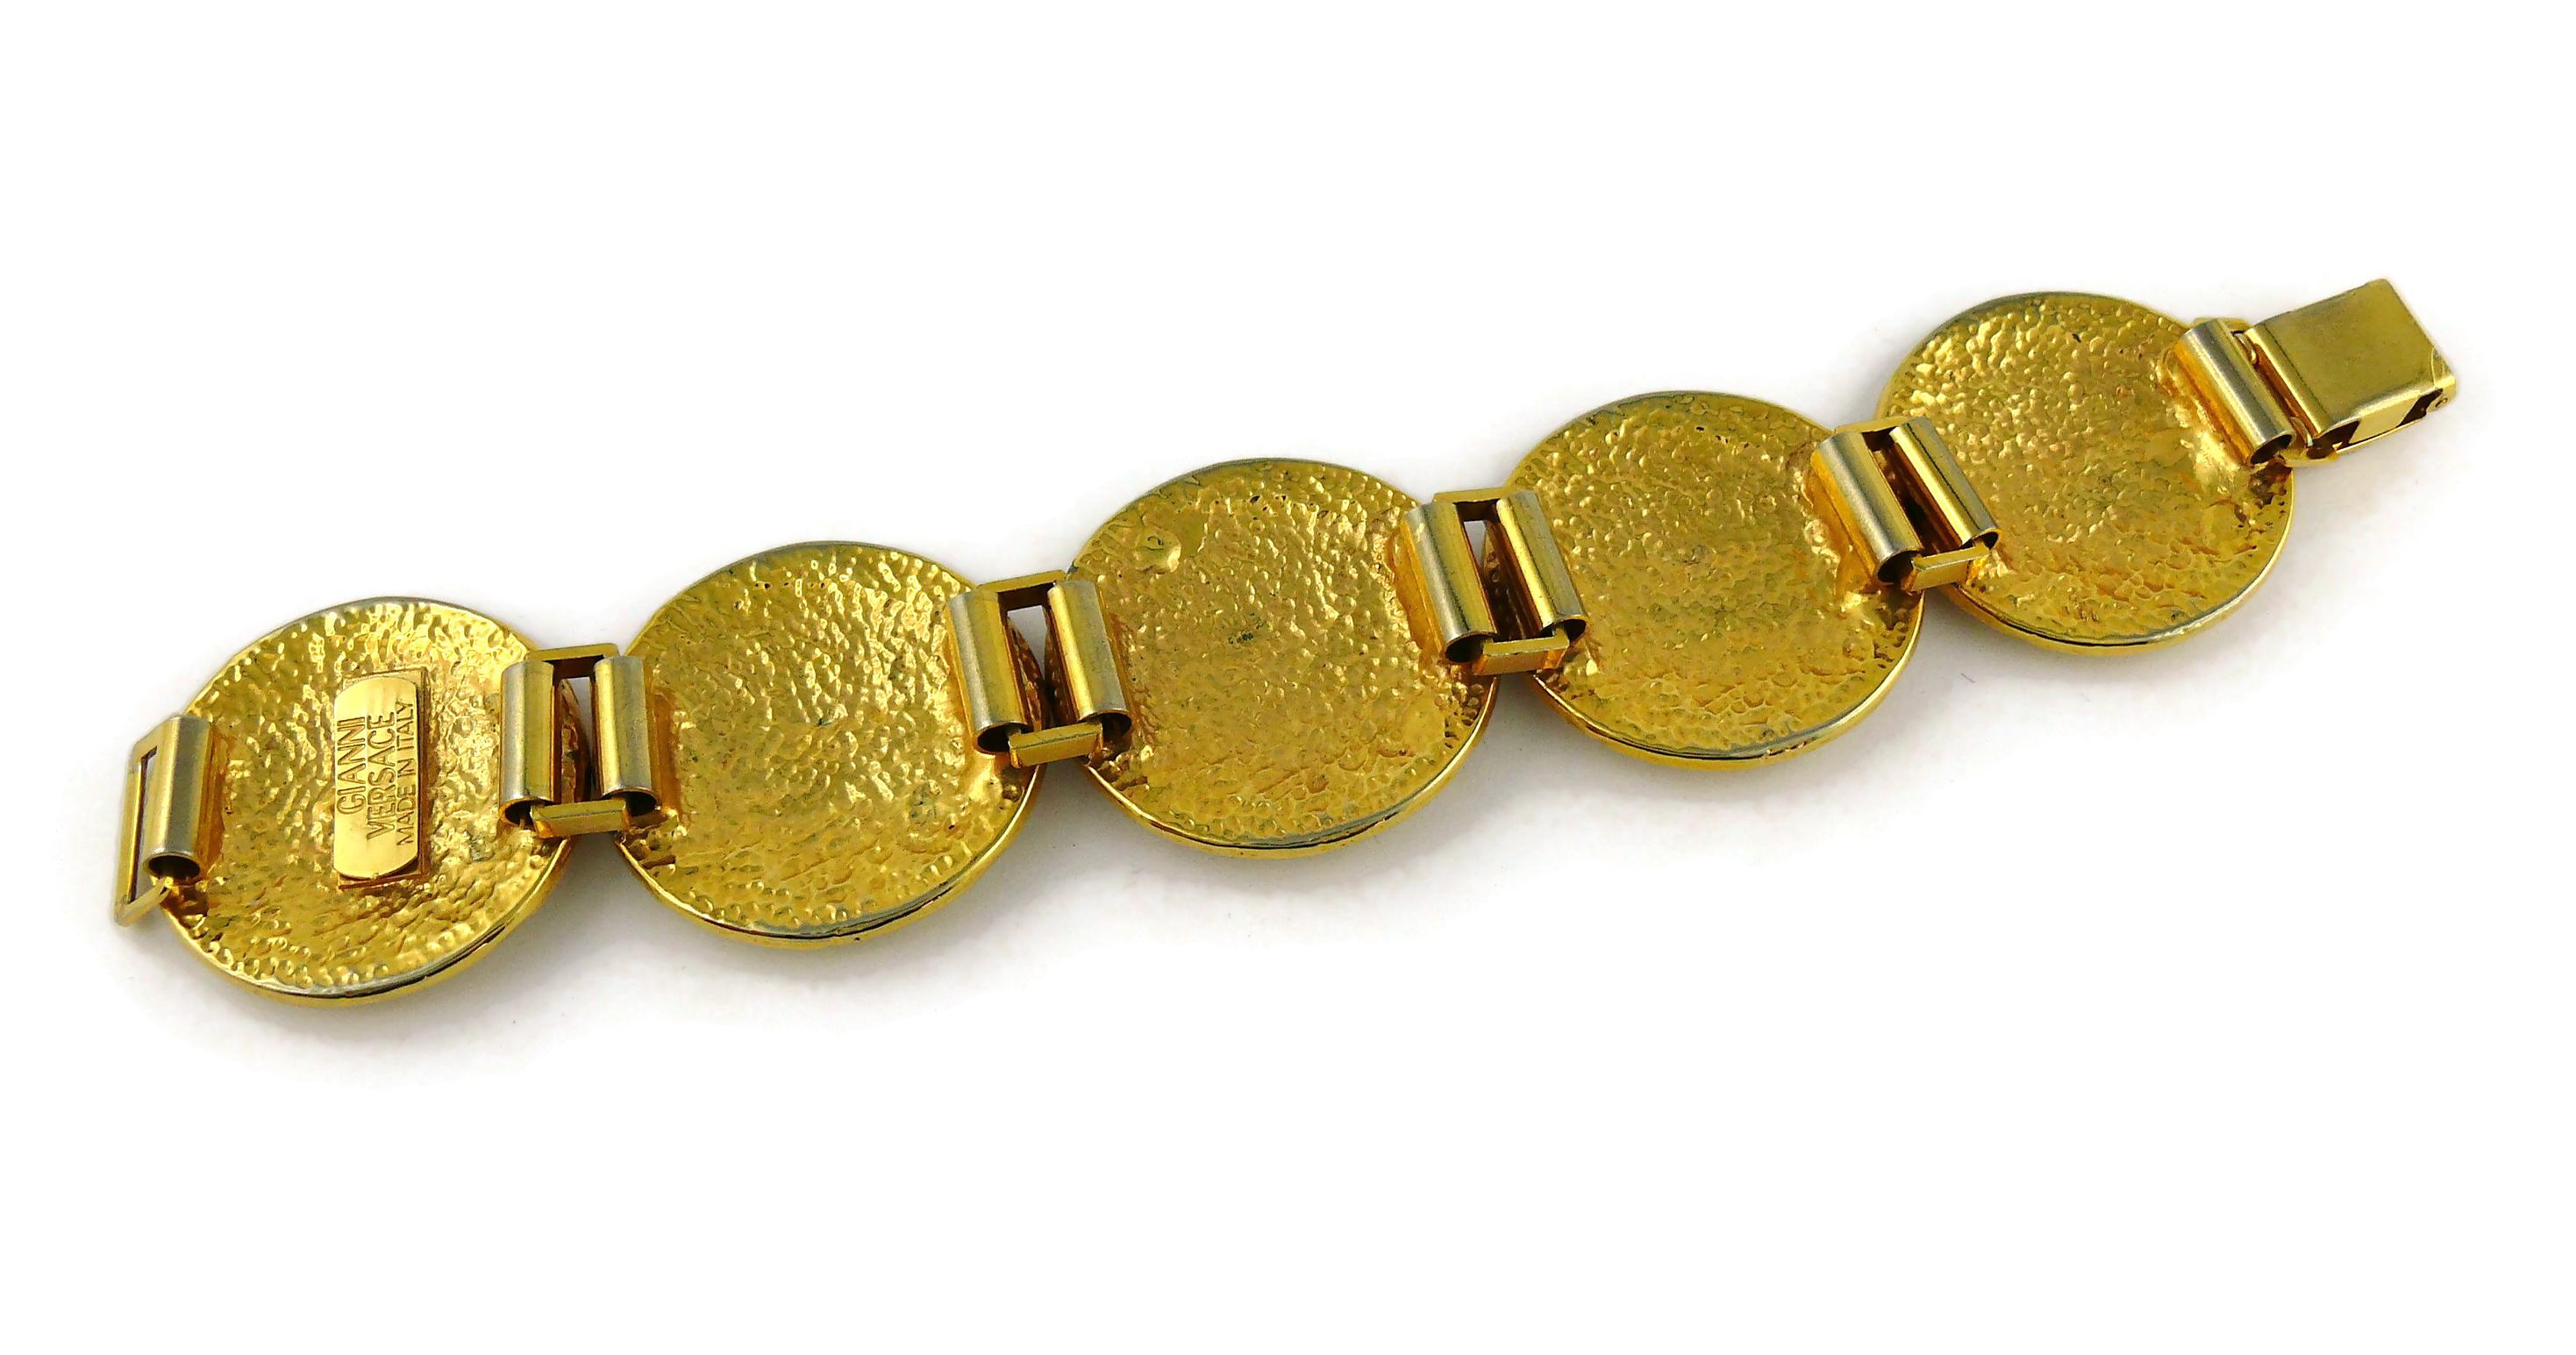 Gianni Versace Vintage Iconic Gold Toned Medusa Crystal Bracelet For Sale 2